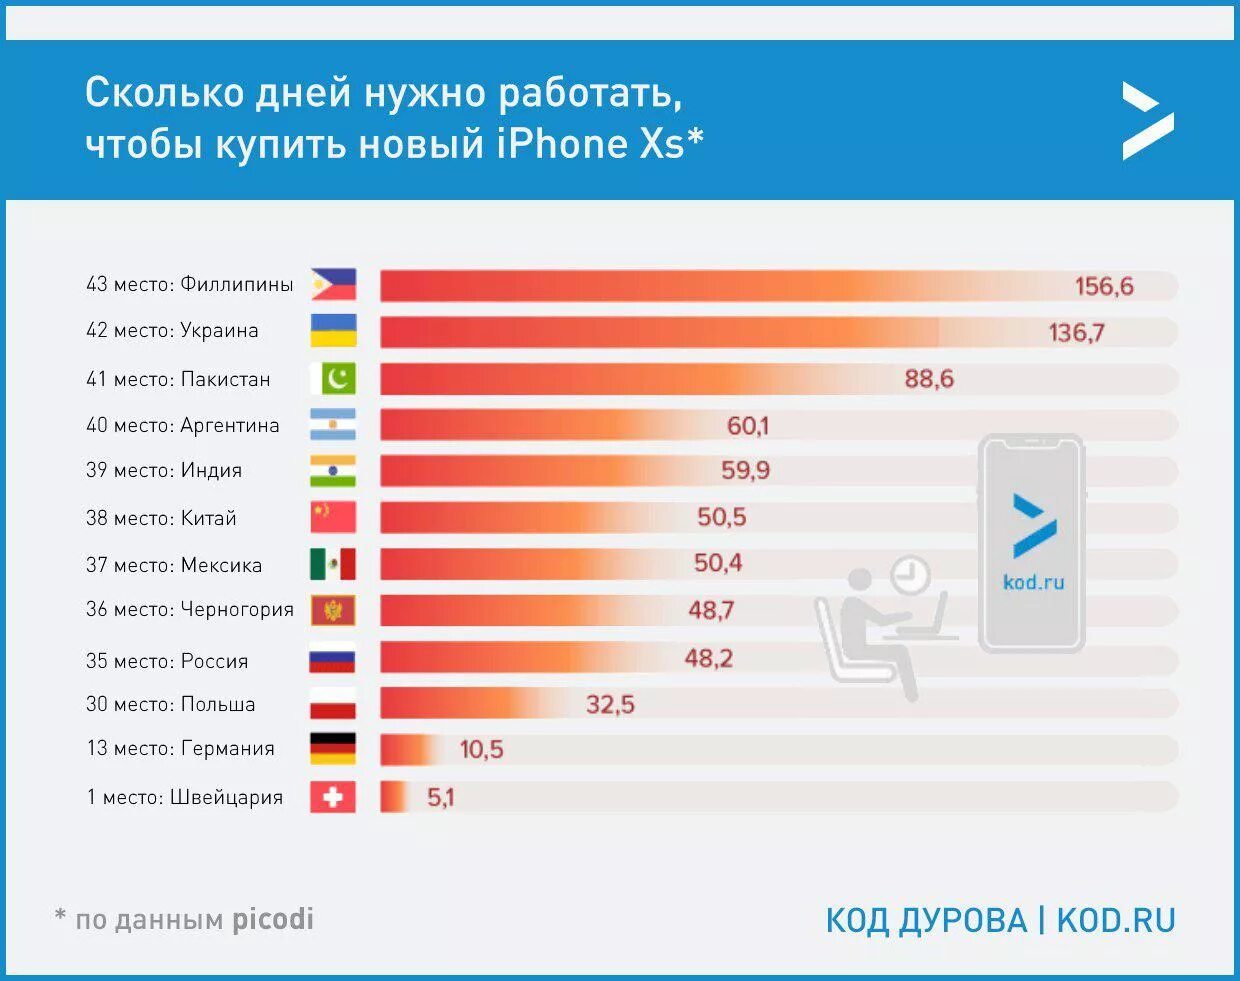 Сколько должна россия. Сколько нужно работать. Сколько дней. Работать в разных странах. Количество айфоном в разных странах.